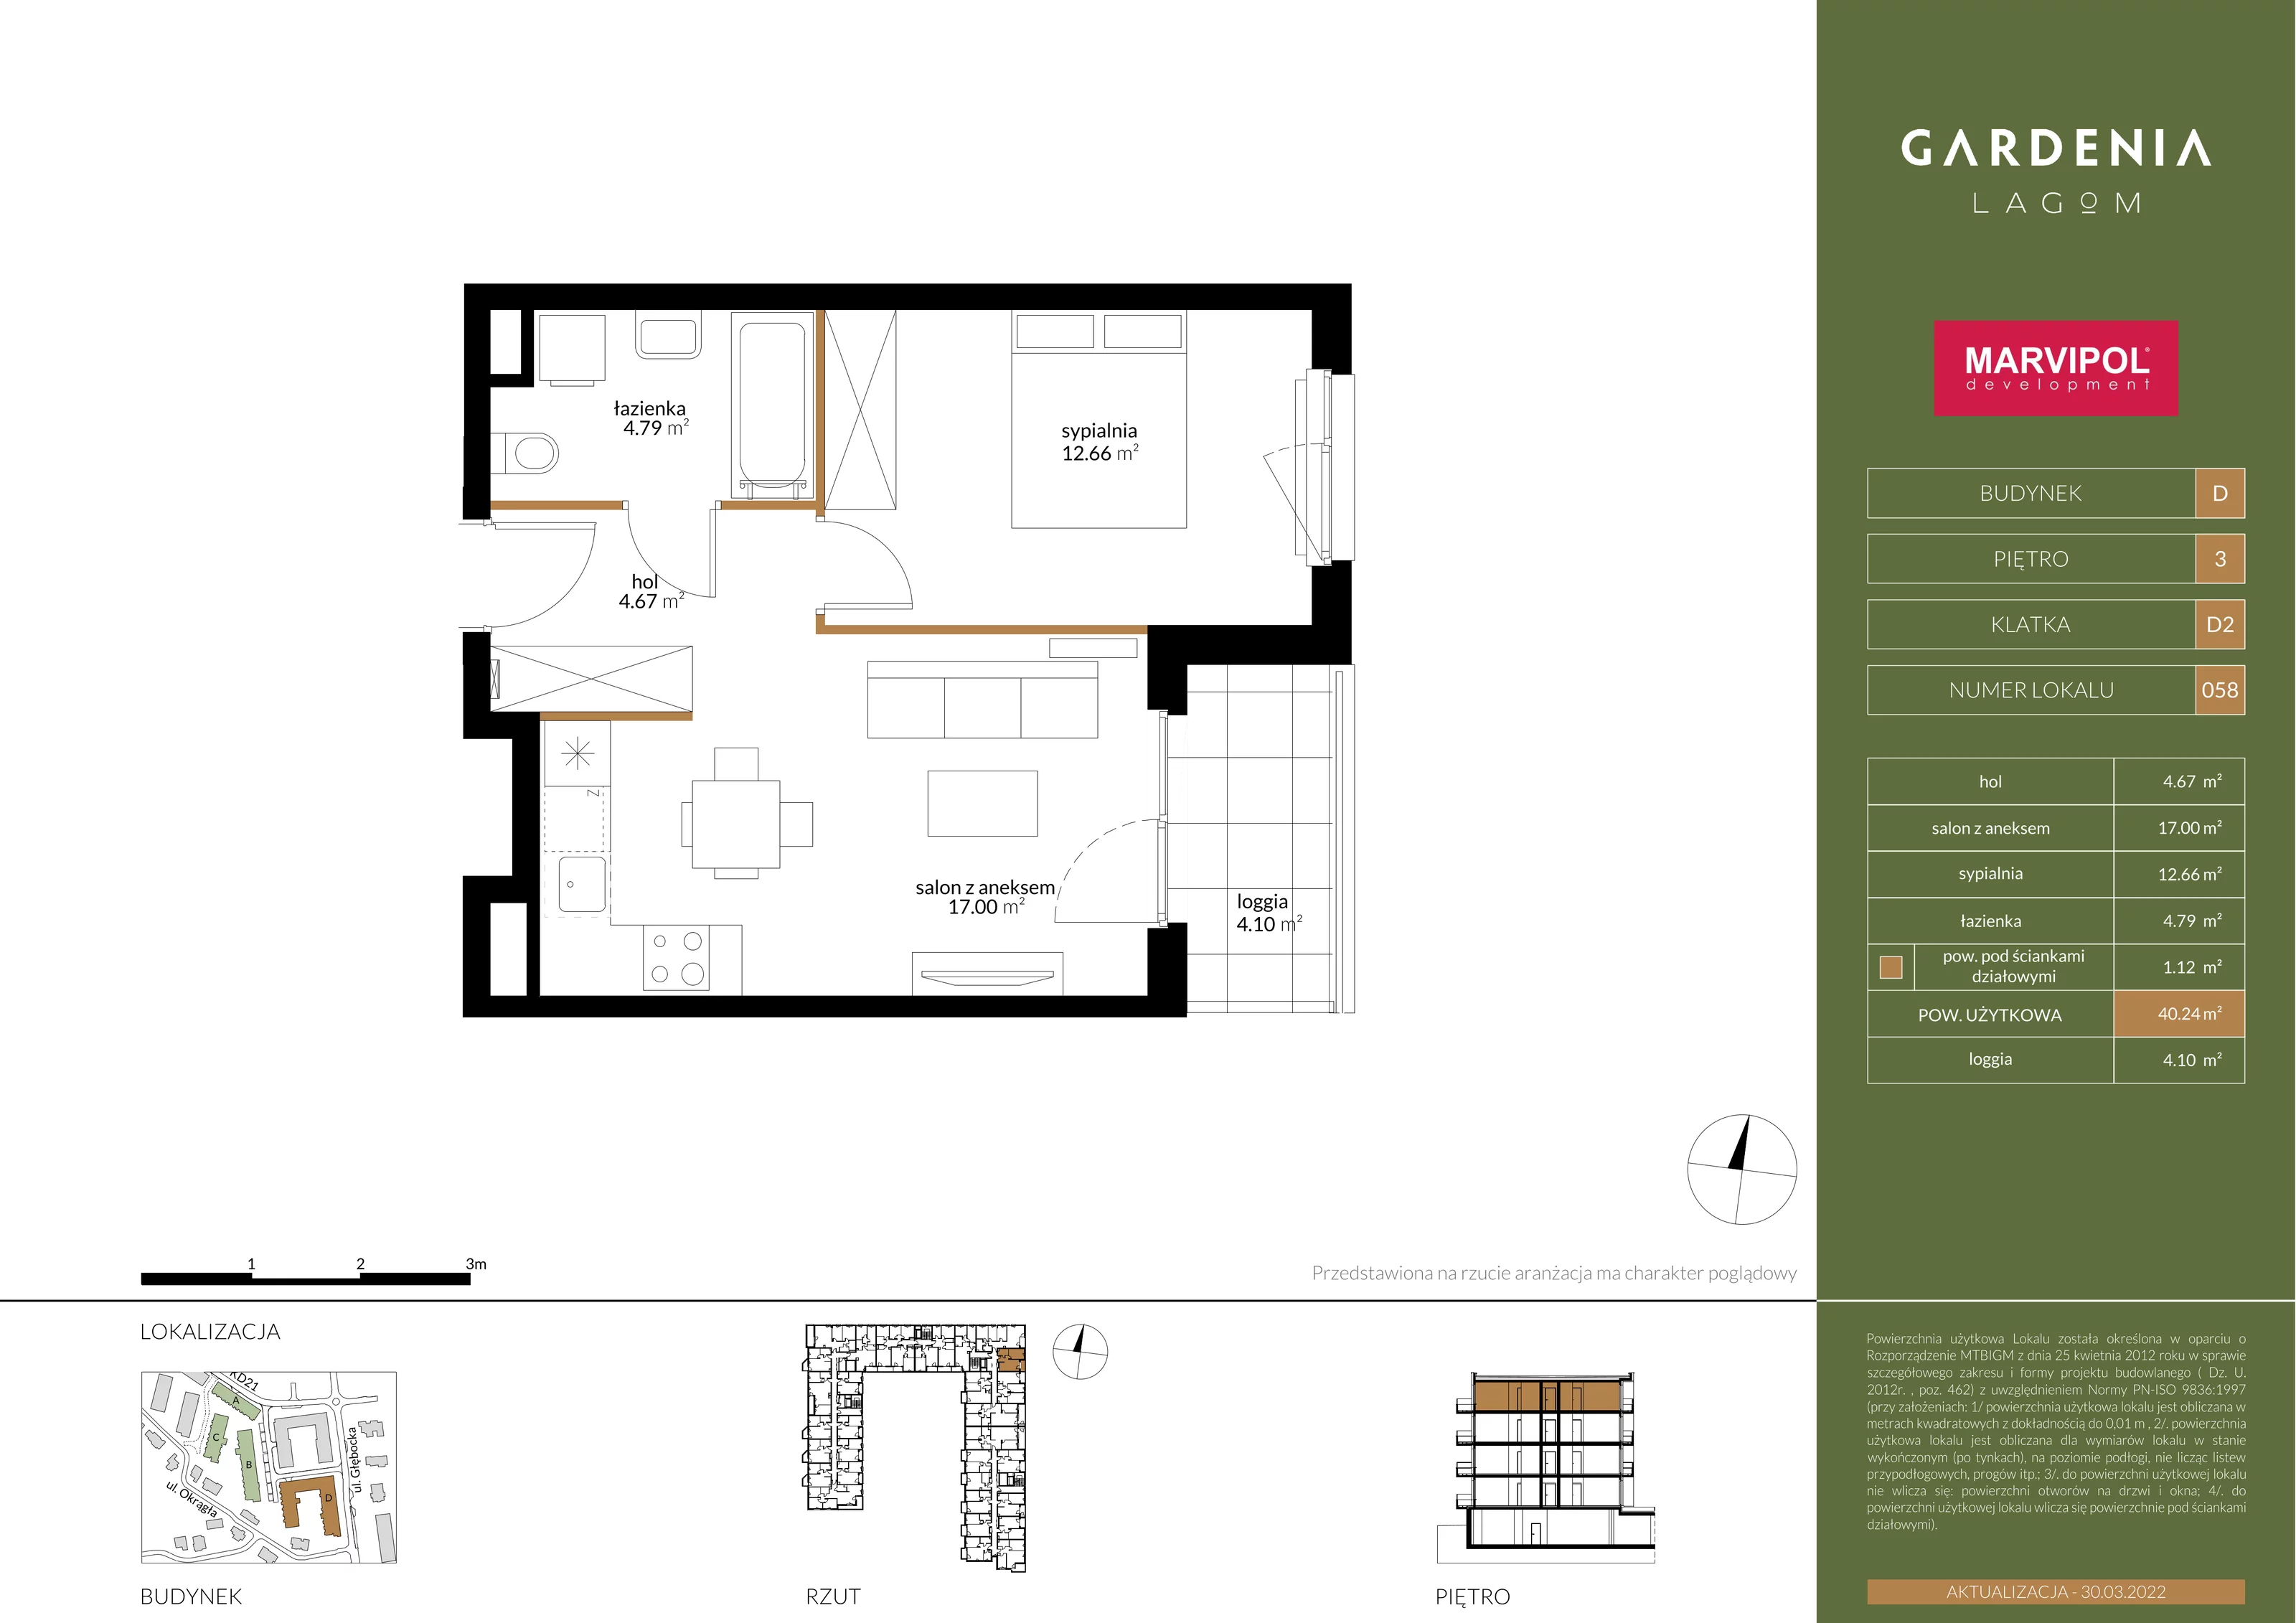 Apartament 40,24 m², piętro 3, oferta nr D058, Gardenia Lagom, Warszawa, Białołęka, Grodzisk, ul. Głębocka 117